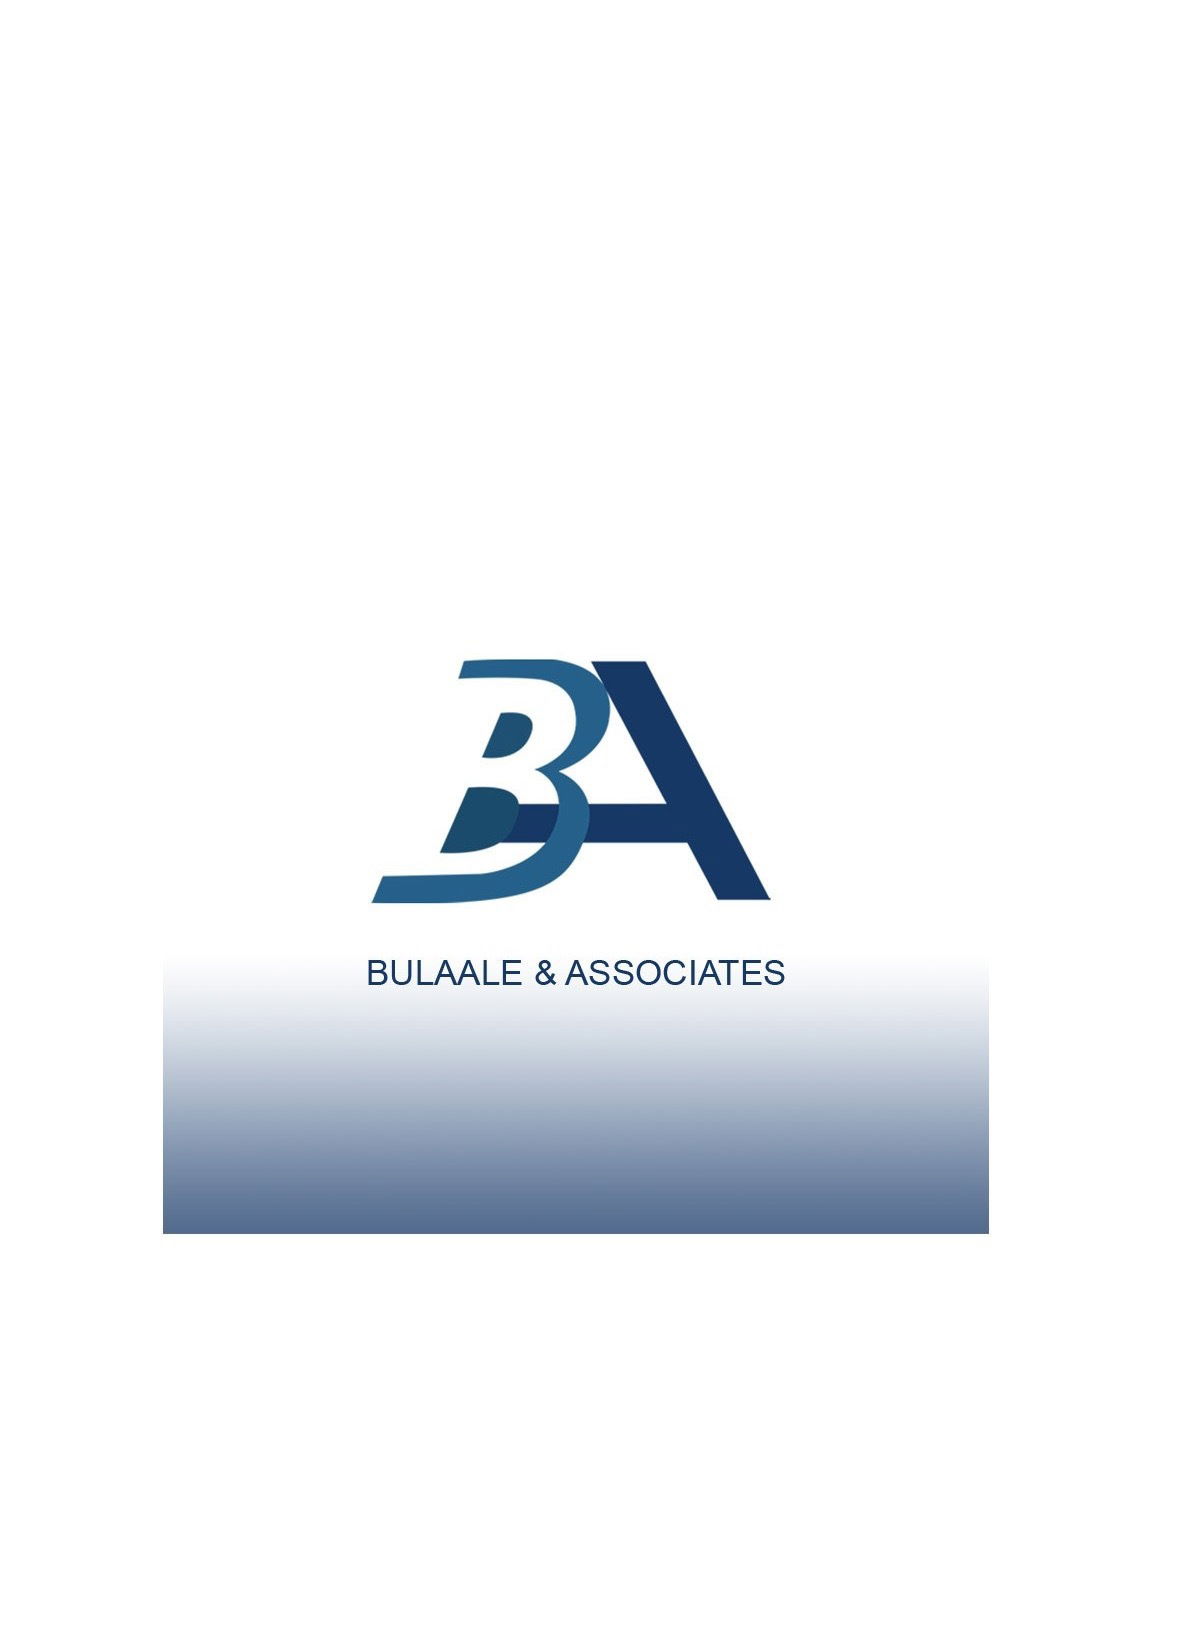 Bulaale & Associates